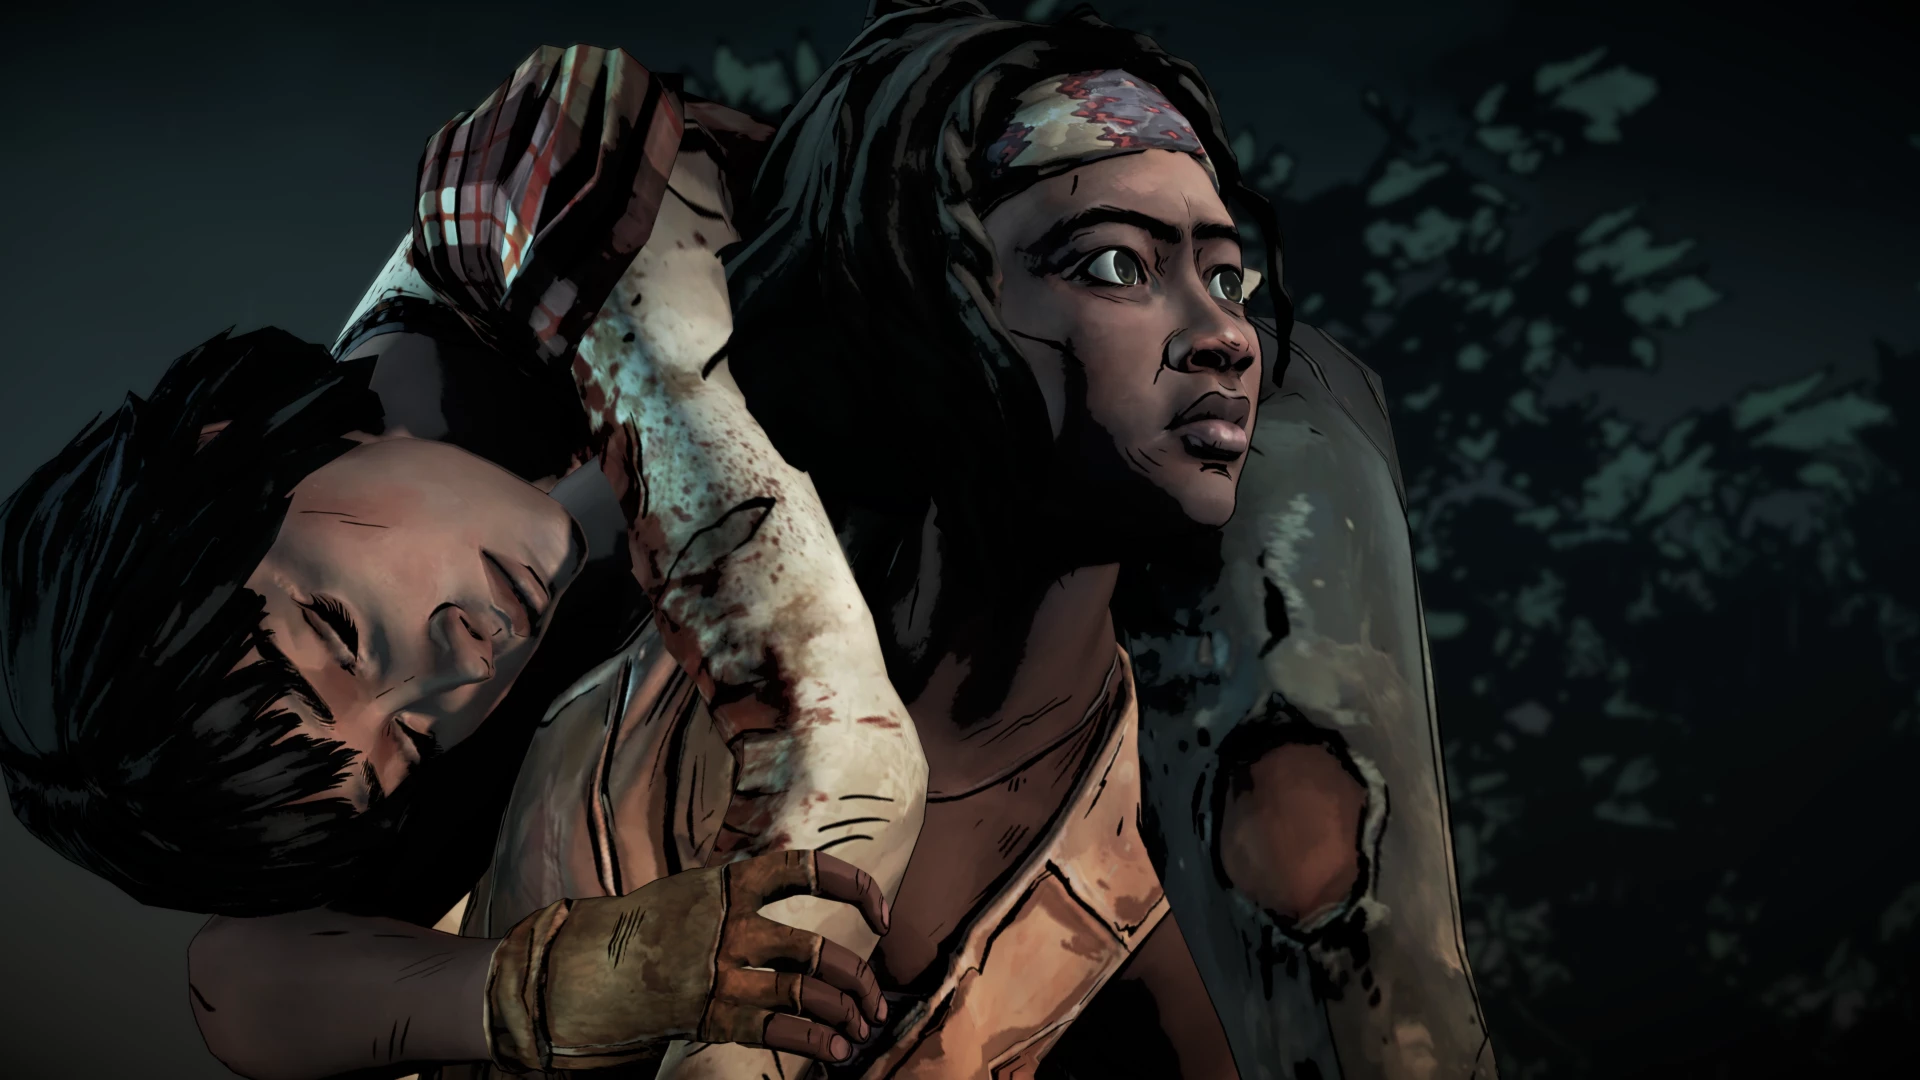 Telltales The Walking Dead the Definitive Series voor de Xbox One kopen op nedgame.nl